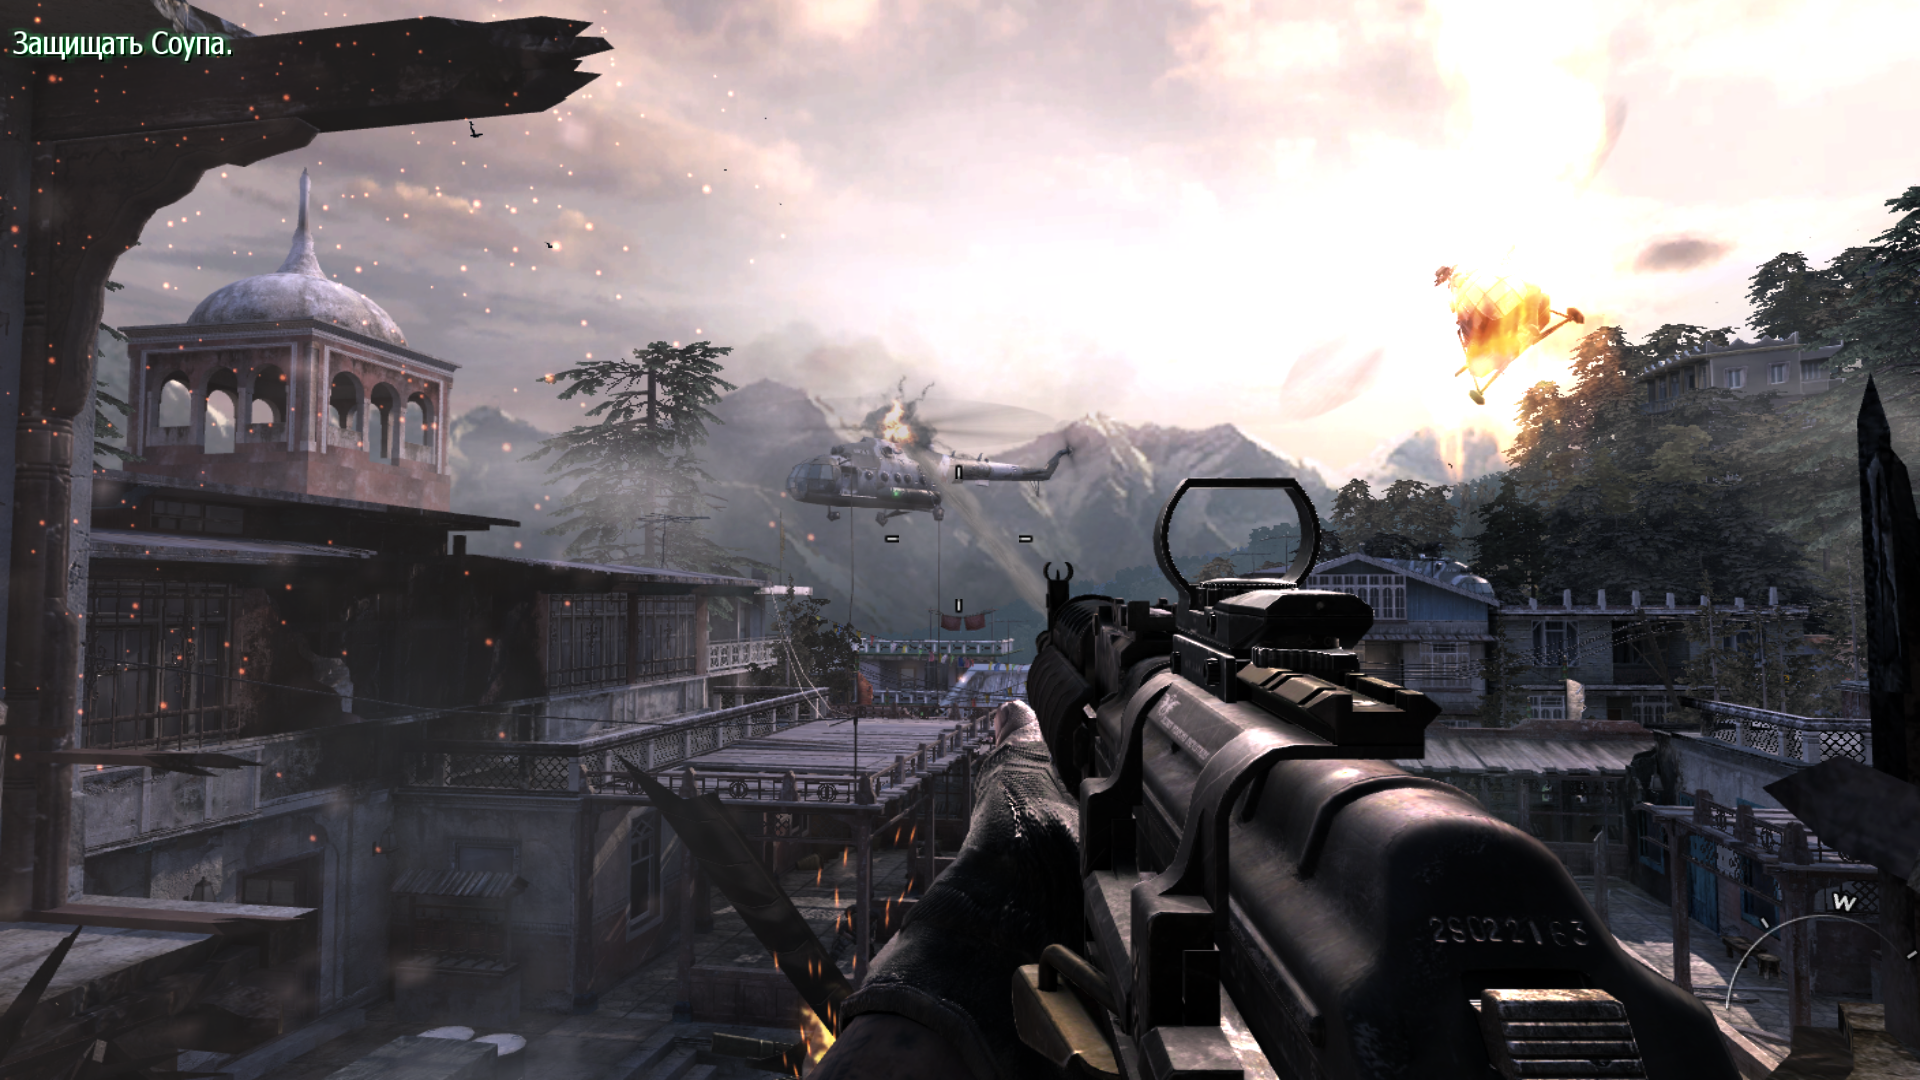 Игры от механиков call of duty. Call of Duty: Modern Warfare 3. Call of Duty mw3. Калл оф дьюти Модерн варфаре 3. Калл оф дьюти Модерн варфэйр 3.